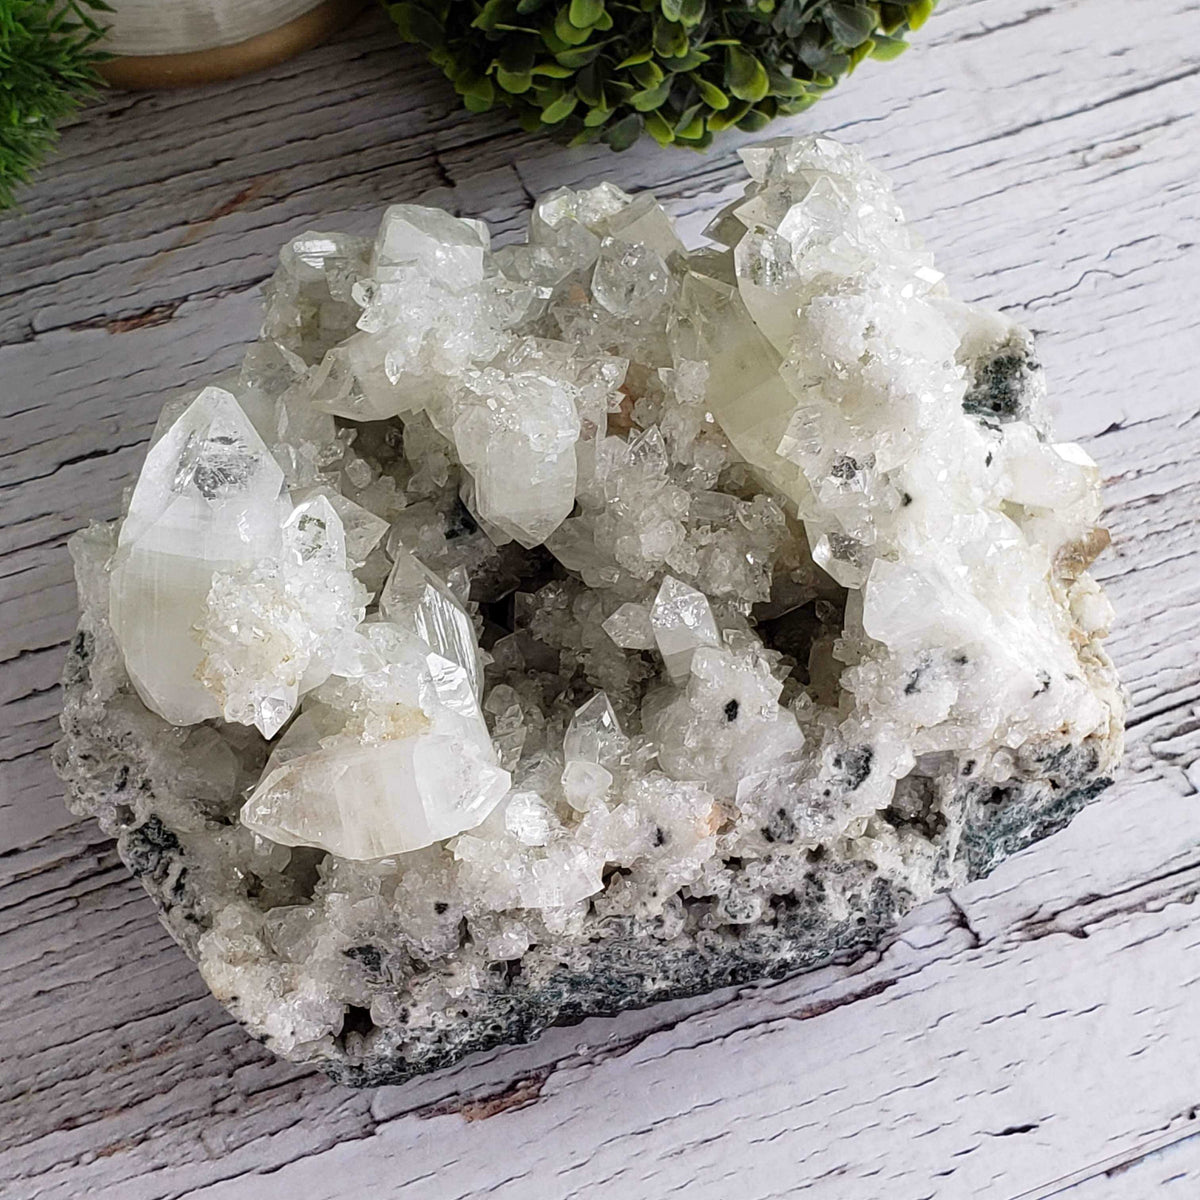 Apophyllite and Stilbite on Chalcedony Druse | 3.71 KG | Double Terminated Crystal | Jalgaon, India